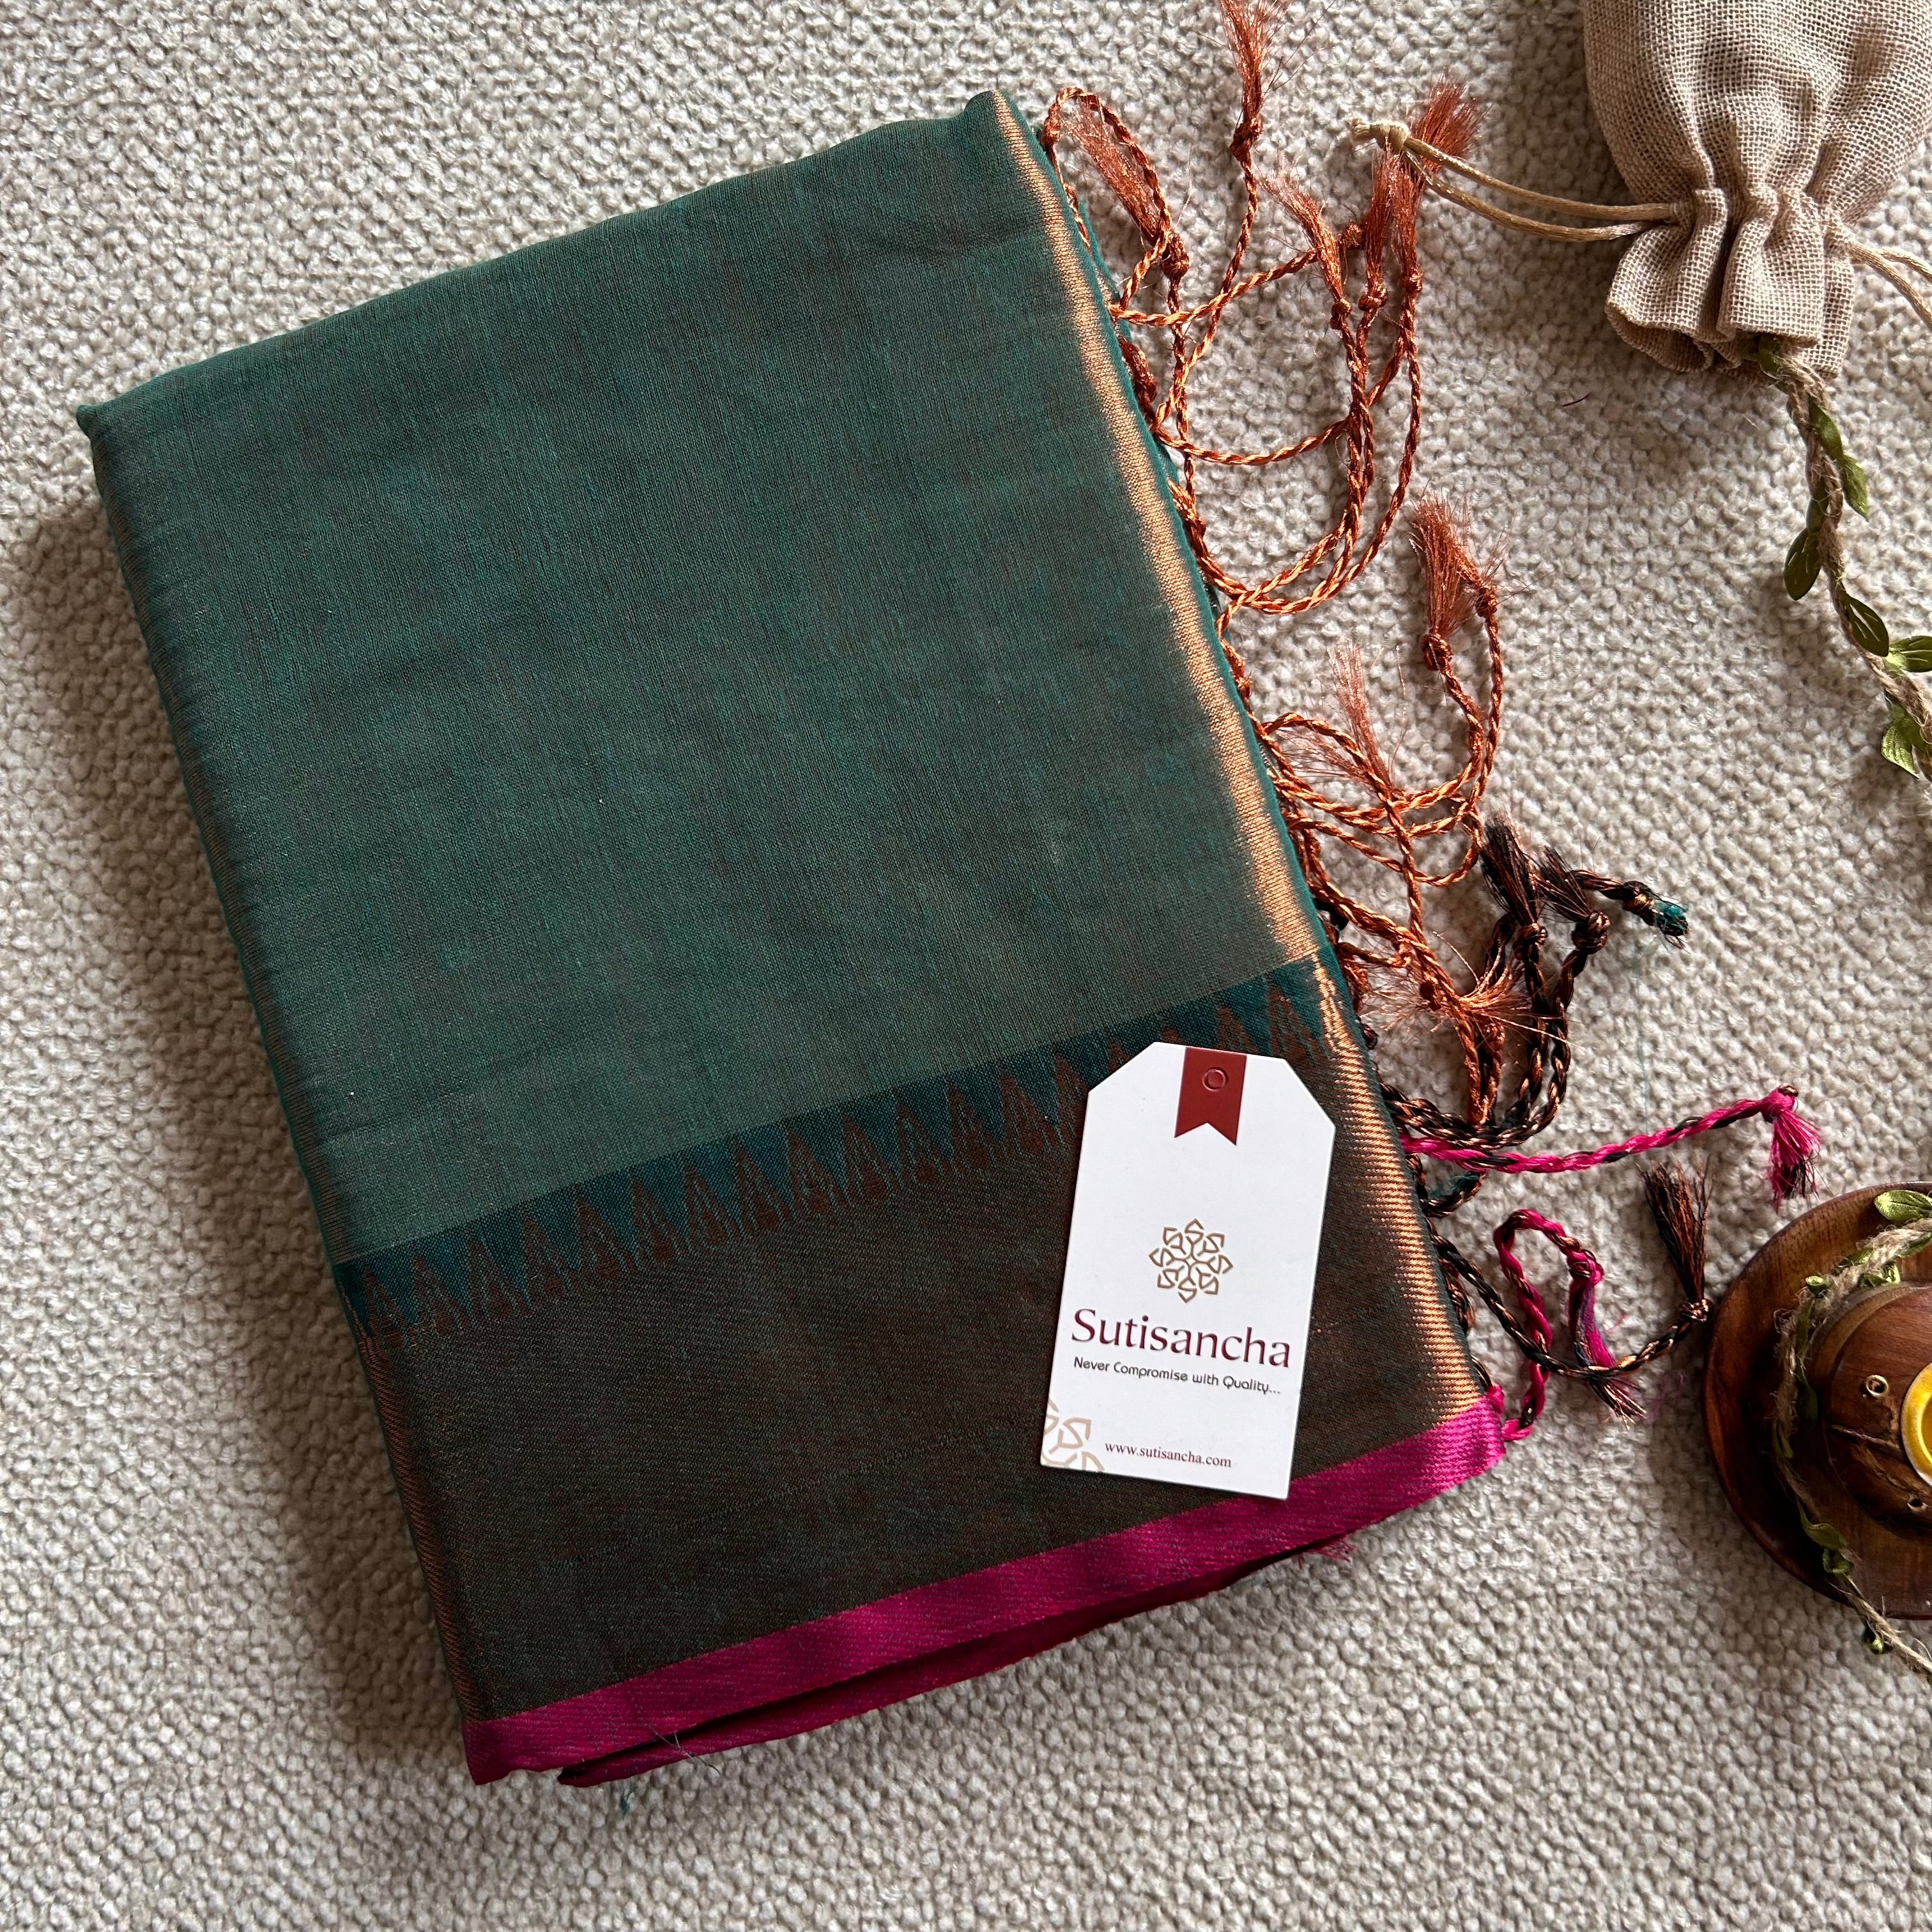 Sutisancha Rama Green Handloom Tissue Saree